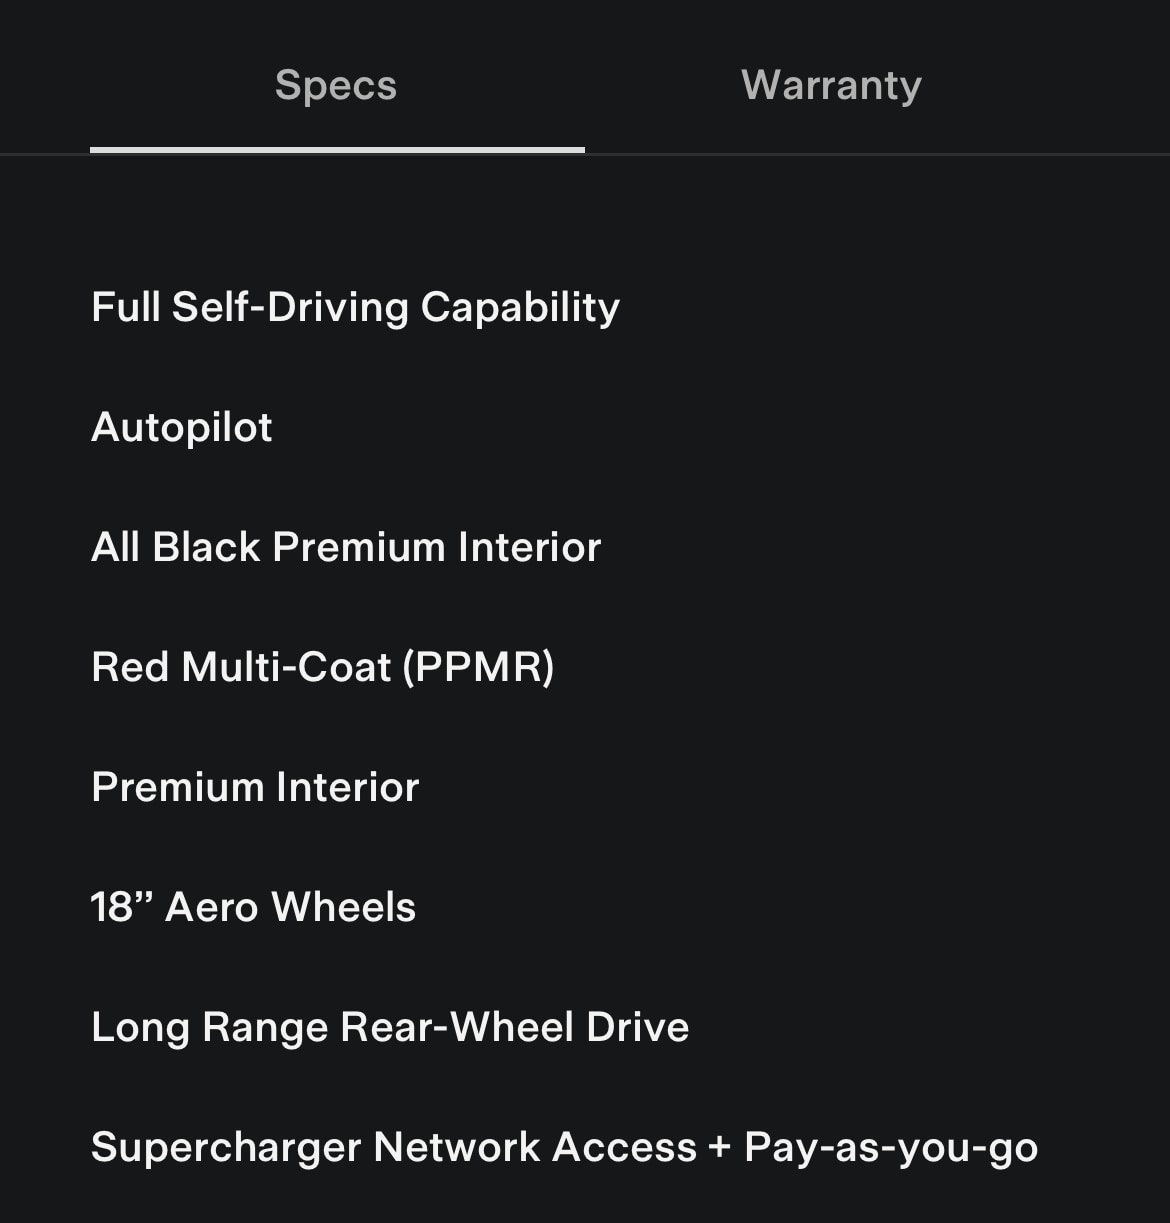 View vehicle specs in the Tesla app